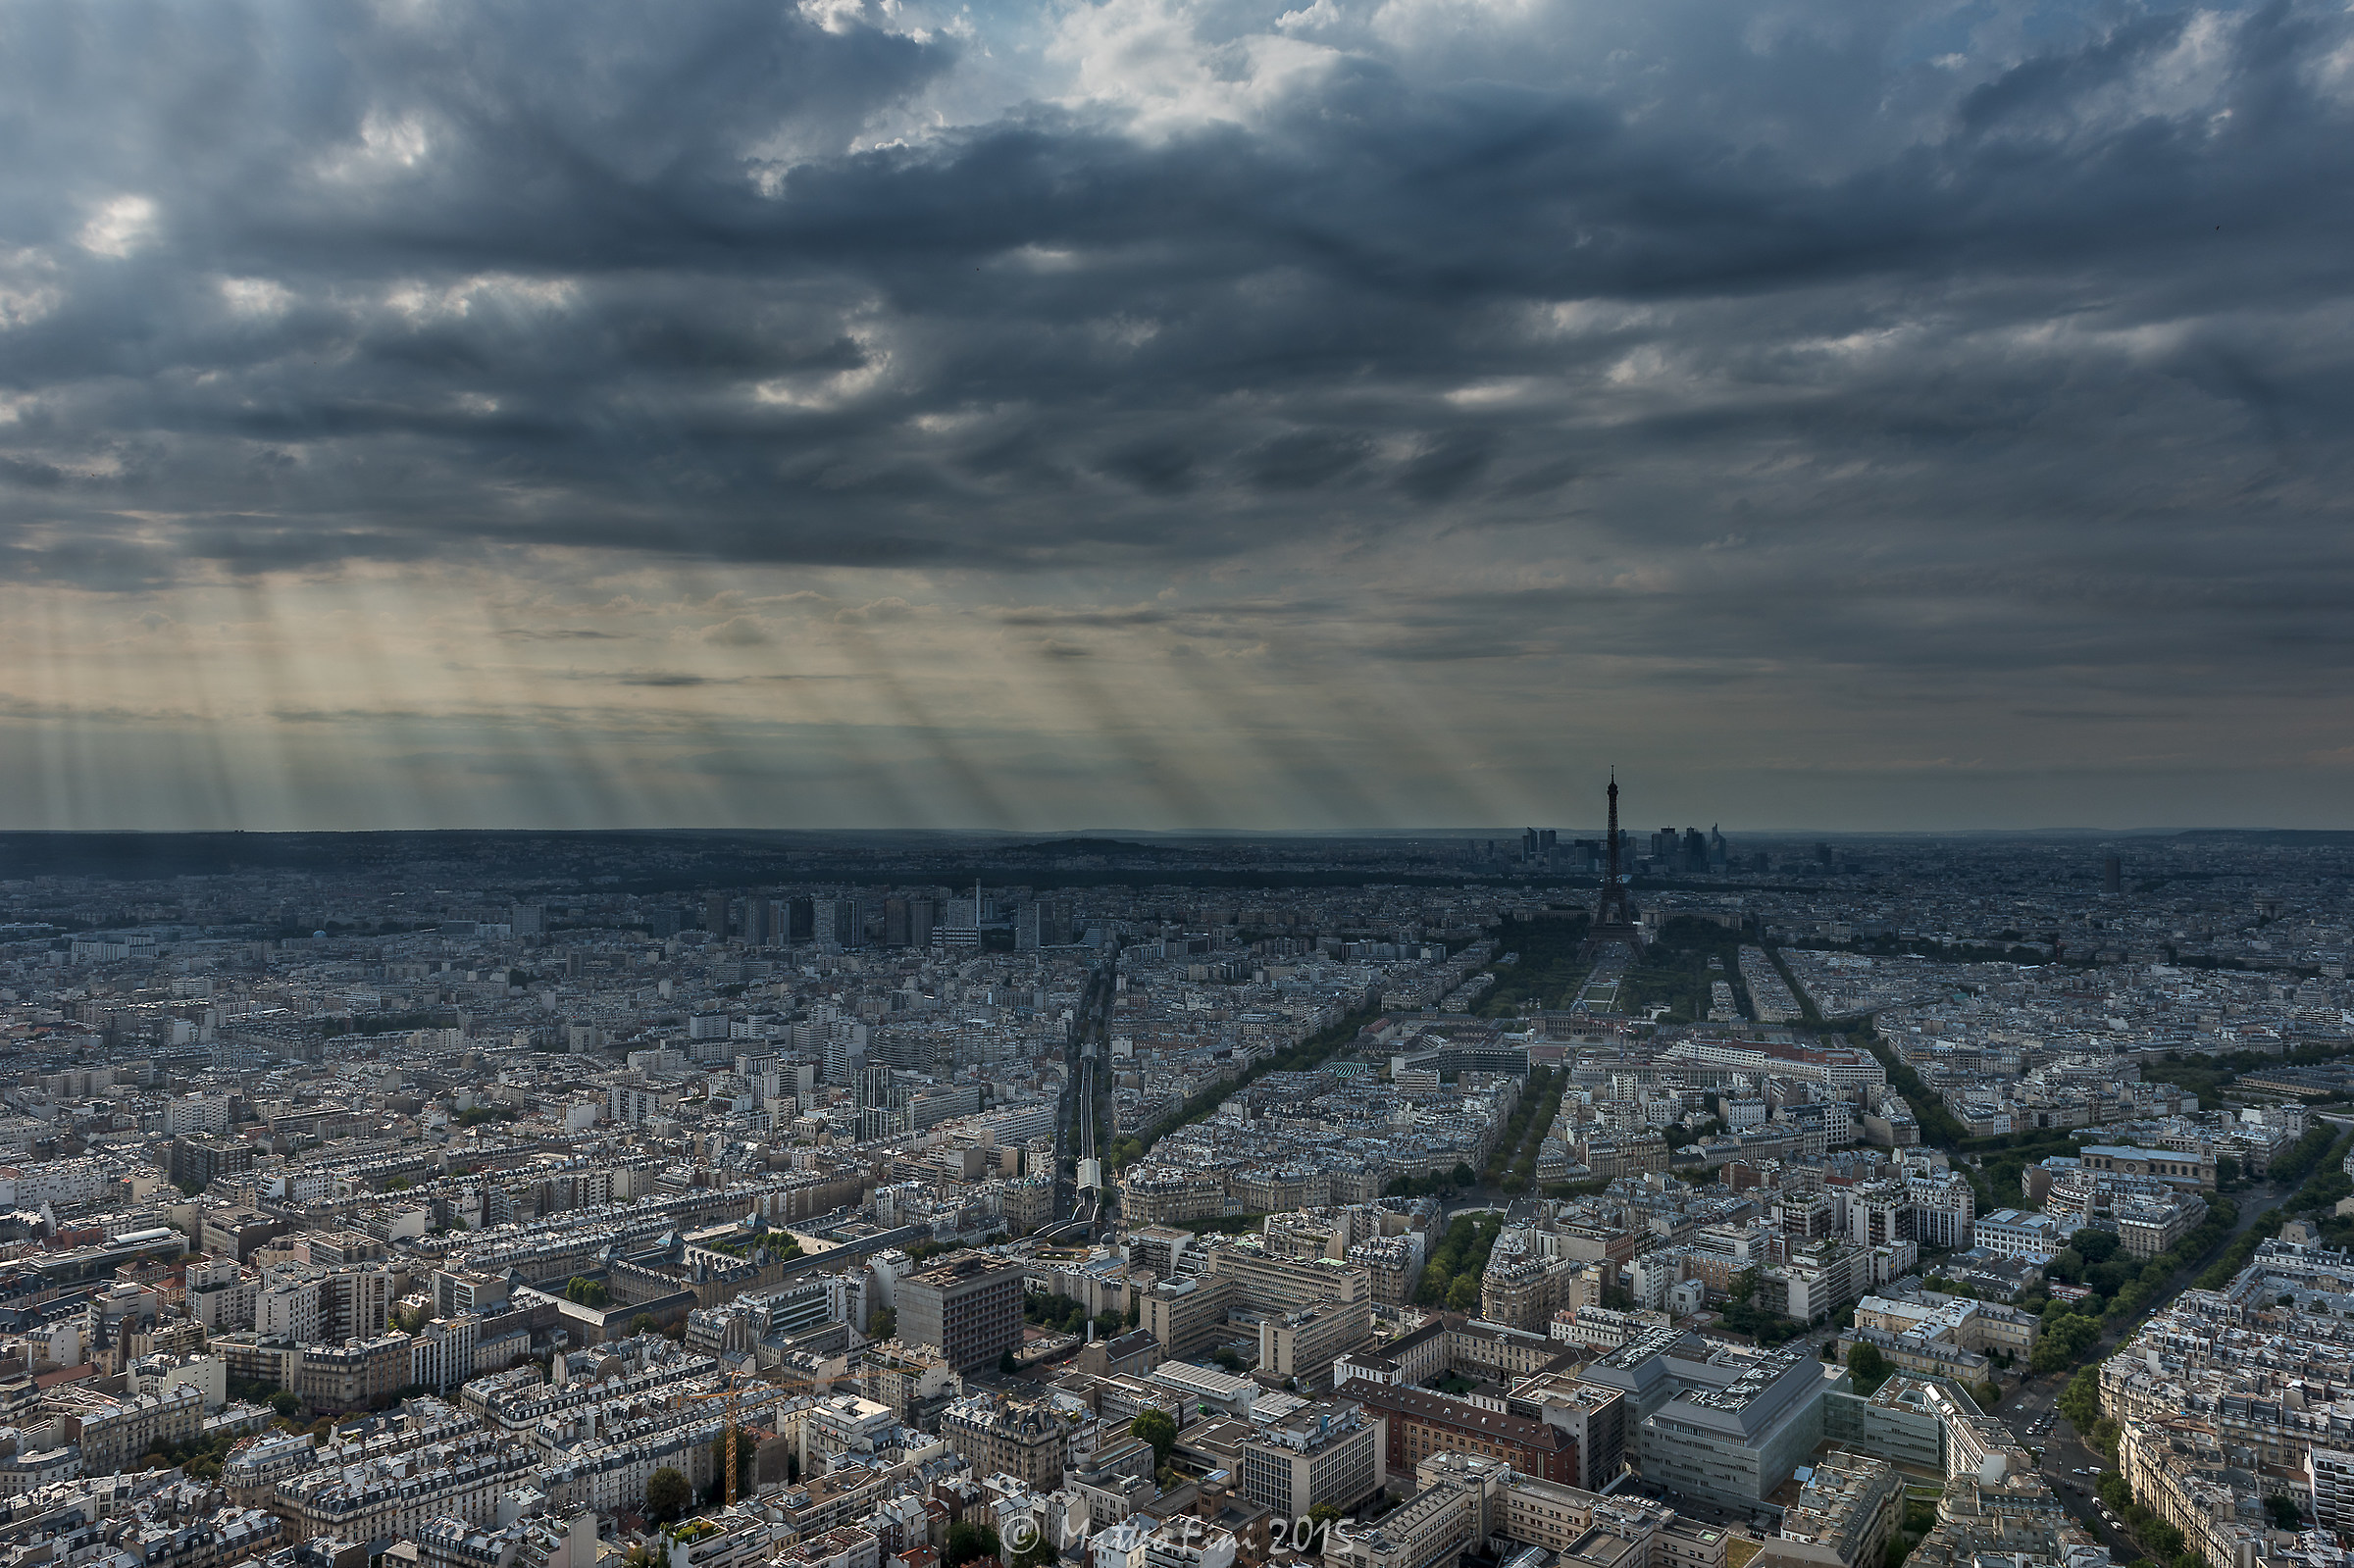 Rain of light over Paris...